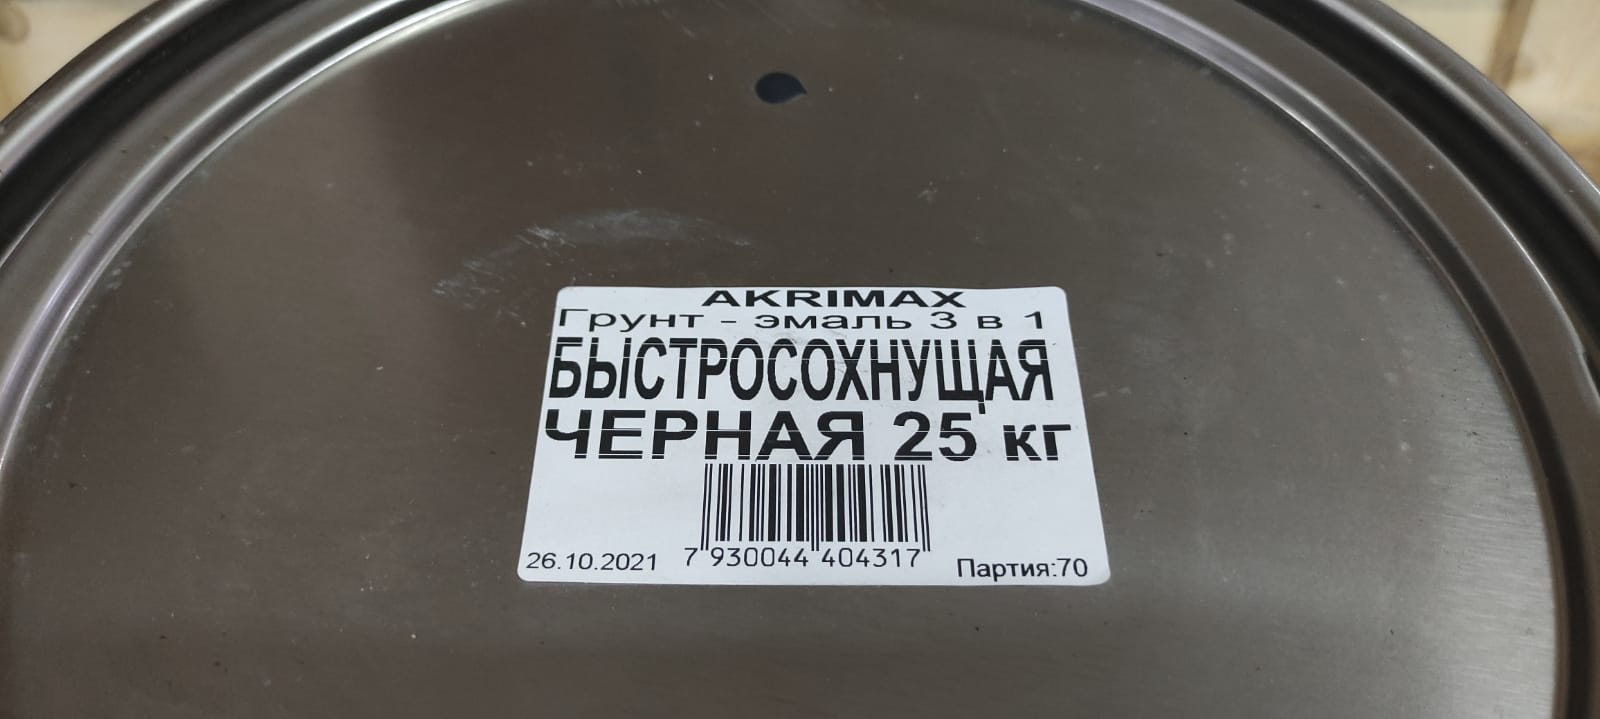 Грунт - эмаль по ржавчине 3 в1 быстросохнущая матовая Akrimax 25 кг (черная)								